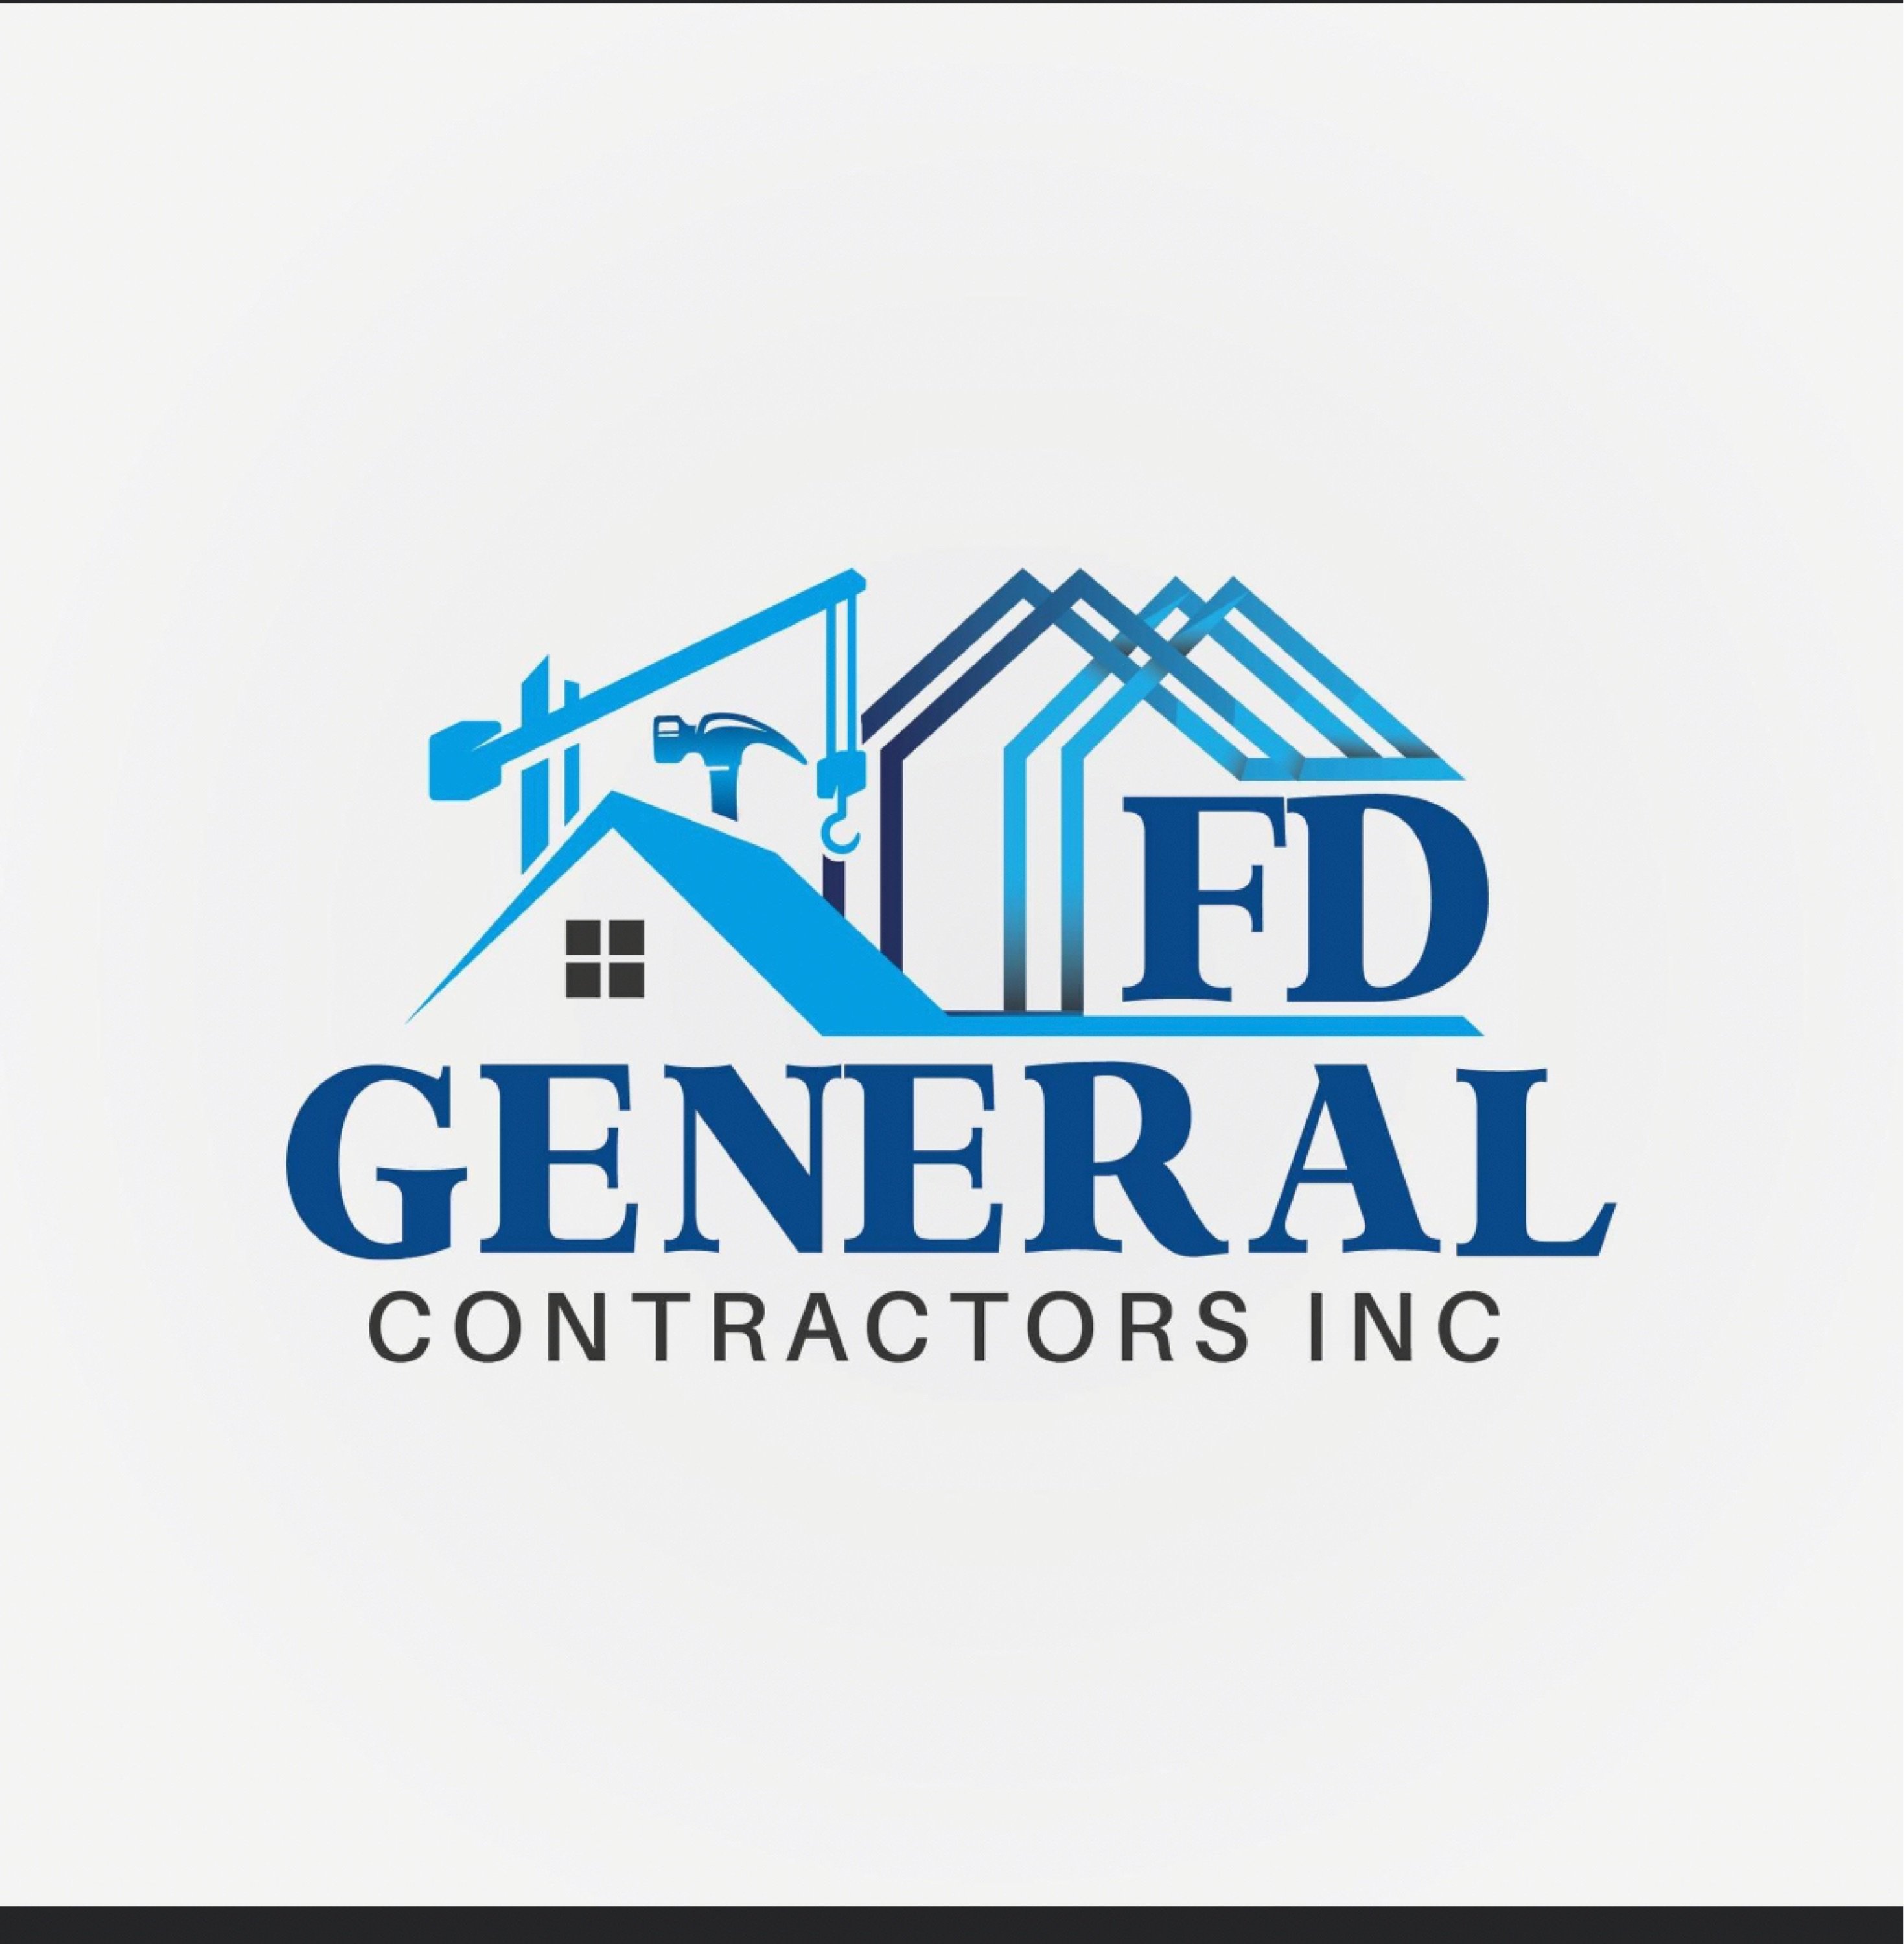 FD General Contractors, Inc. Logo